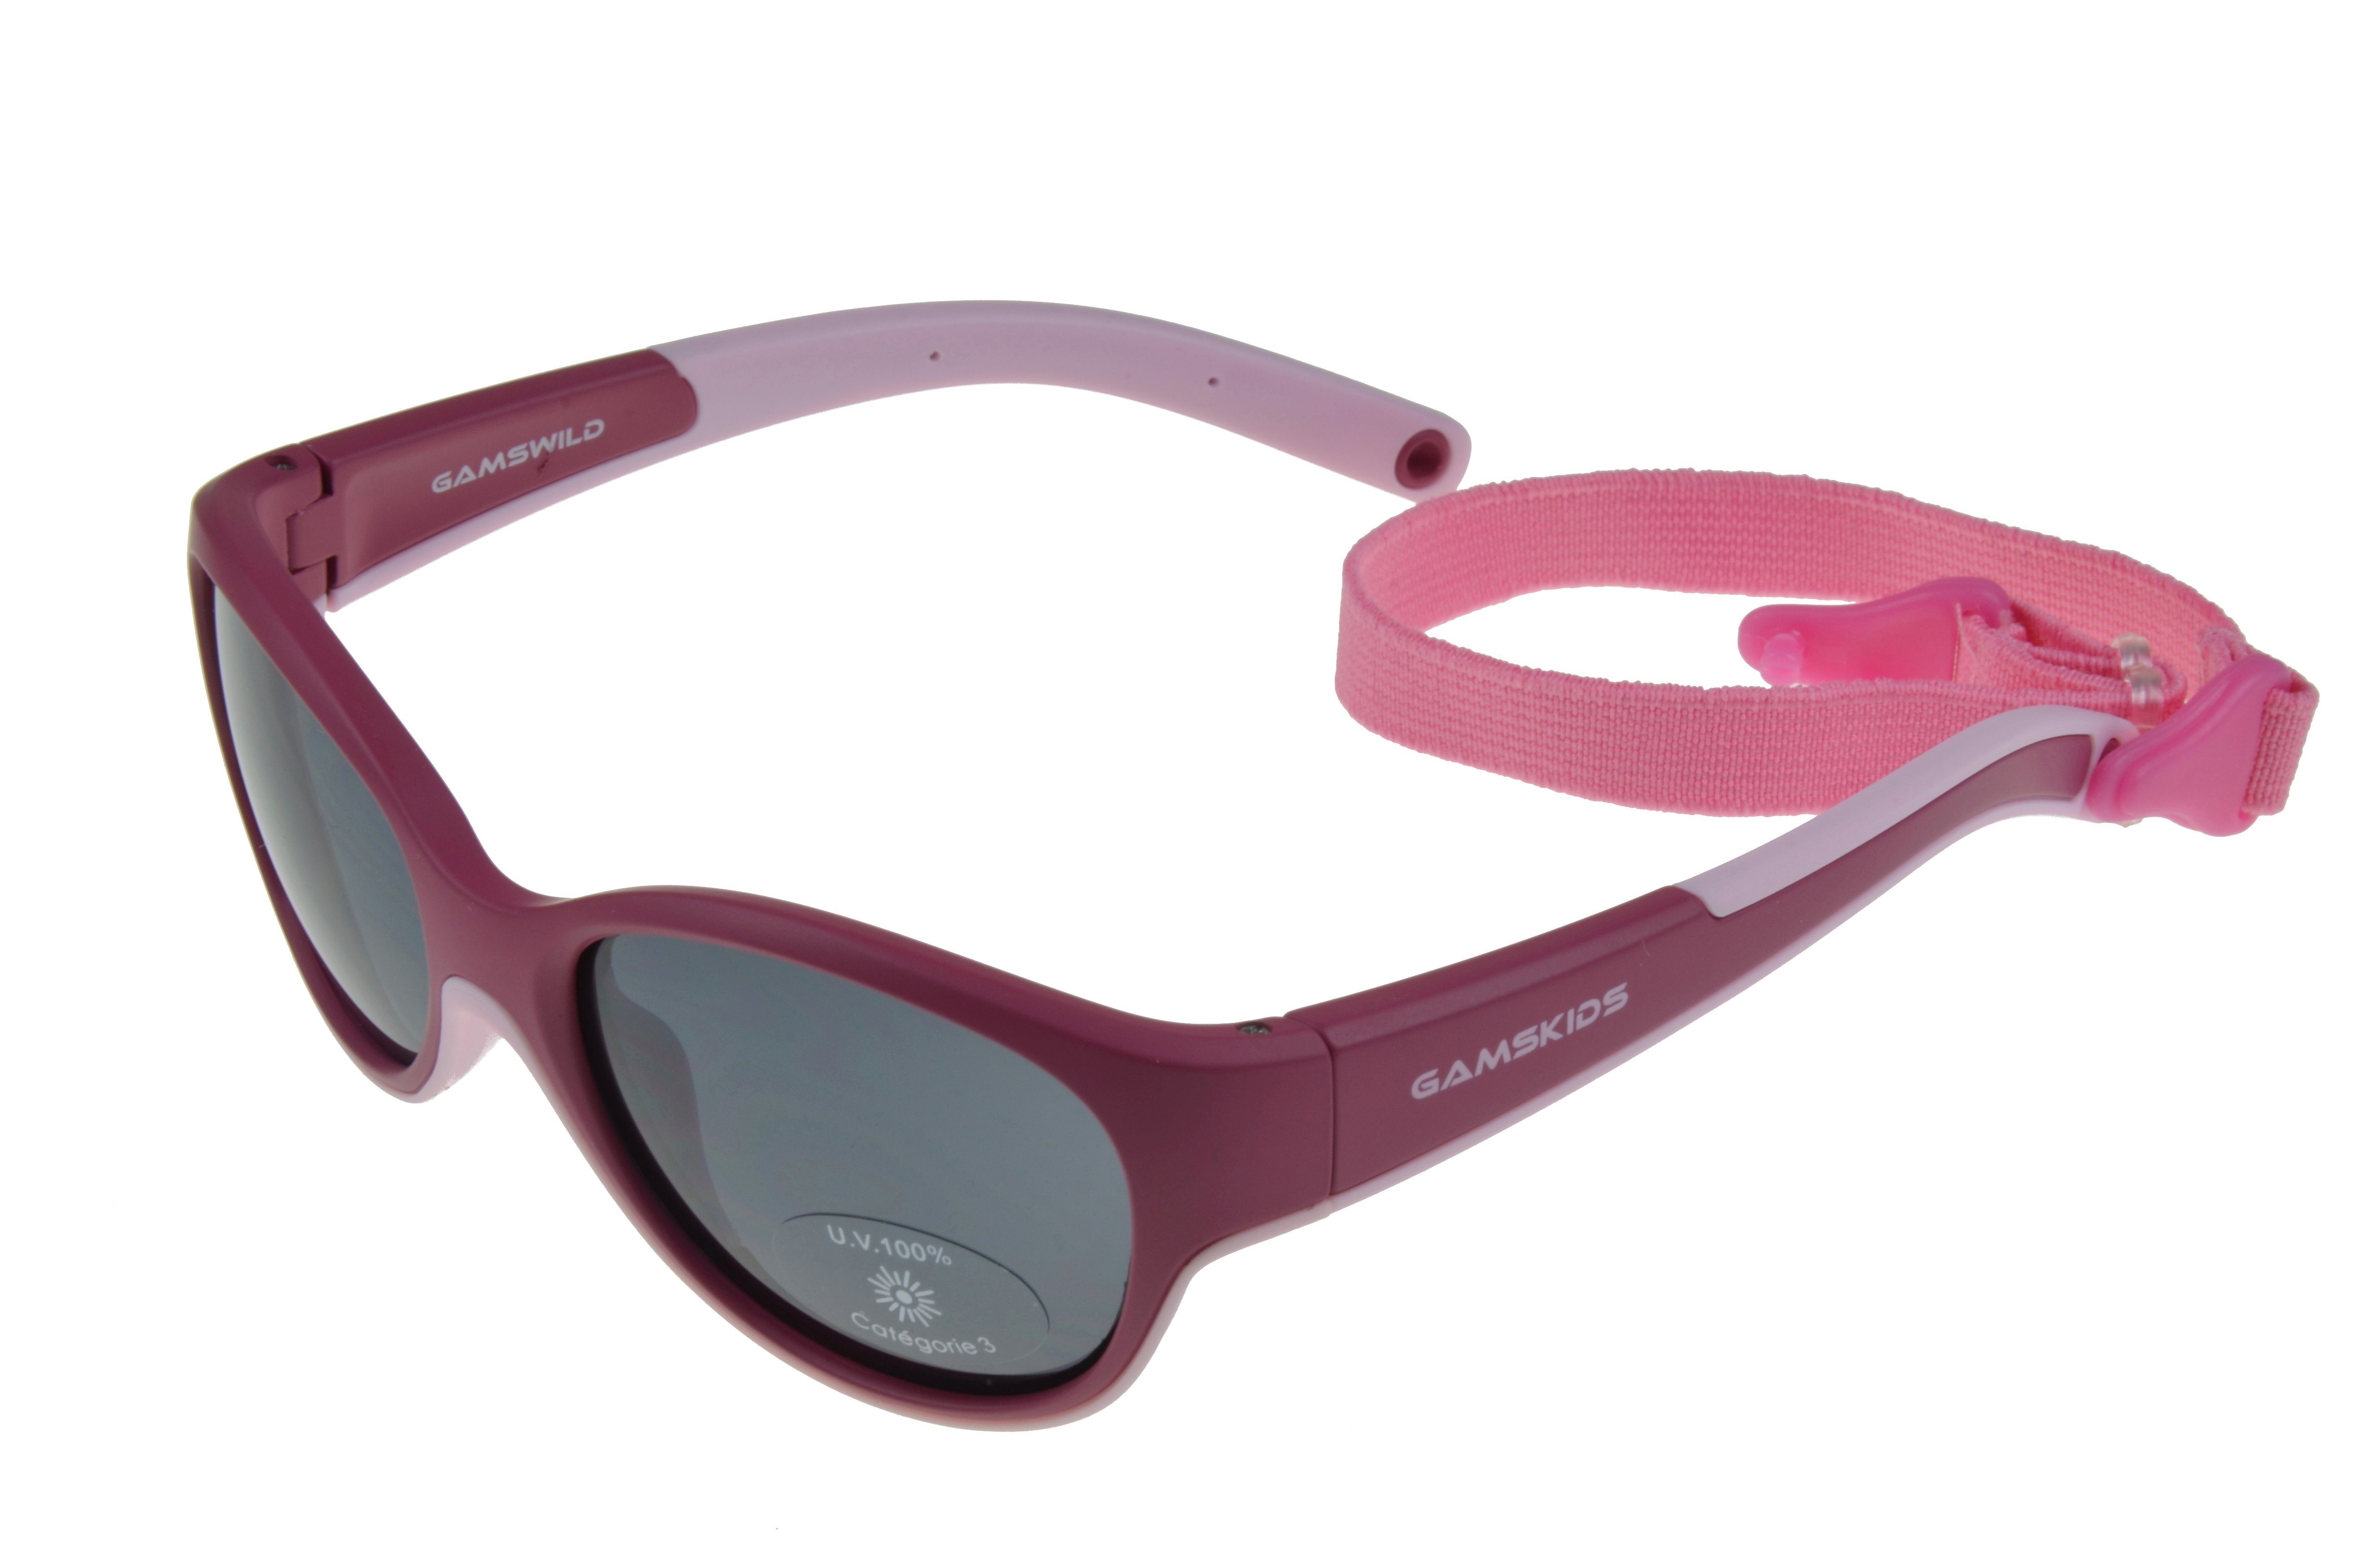 Gamswild Sonnenbrille WK7421 GAMSKIDS Kinderbrille 2-5 Jahre Kleinkindbrille Mädchen Jungen kids Unisex, mintgrün, pink, rot-orange incl. Brillenband rosa-pink